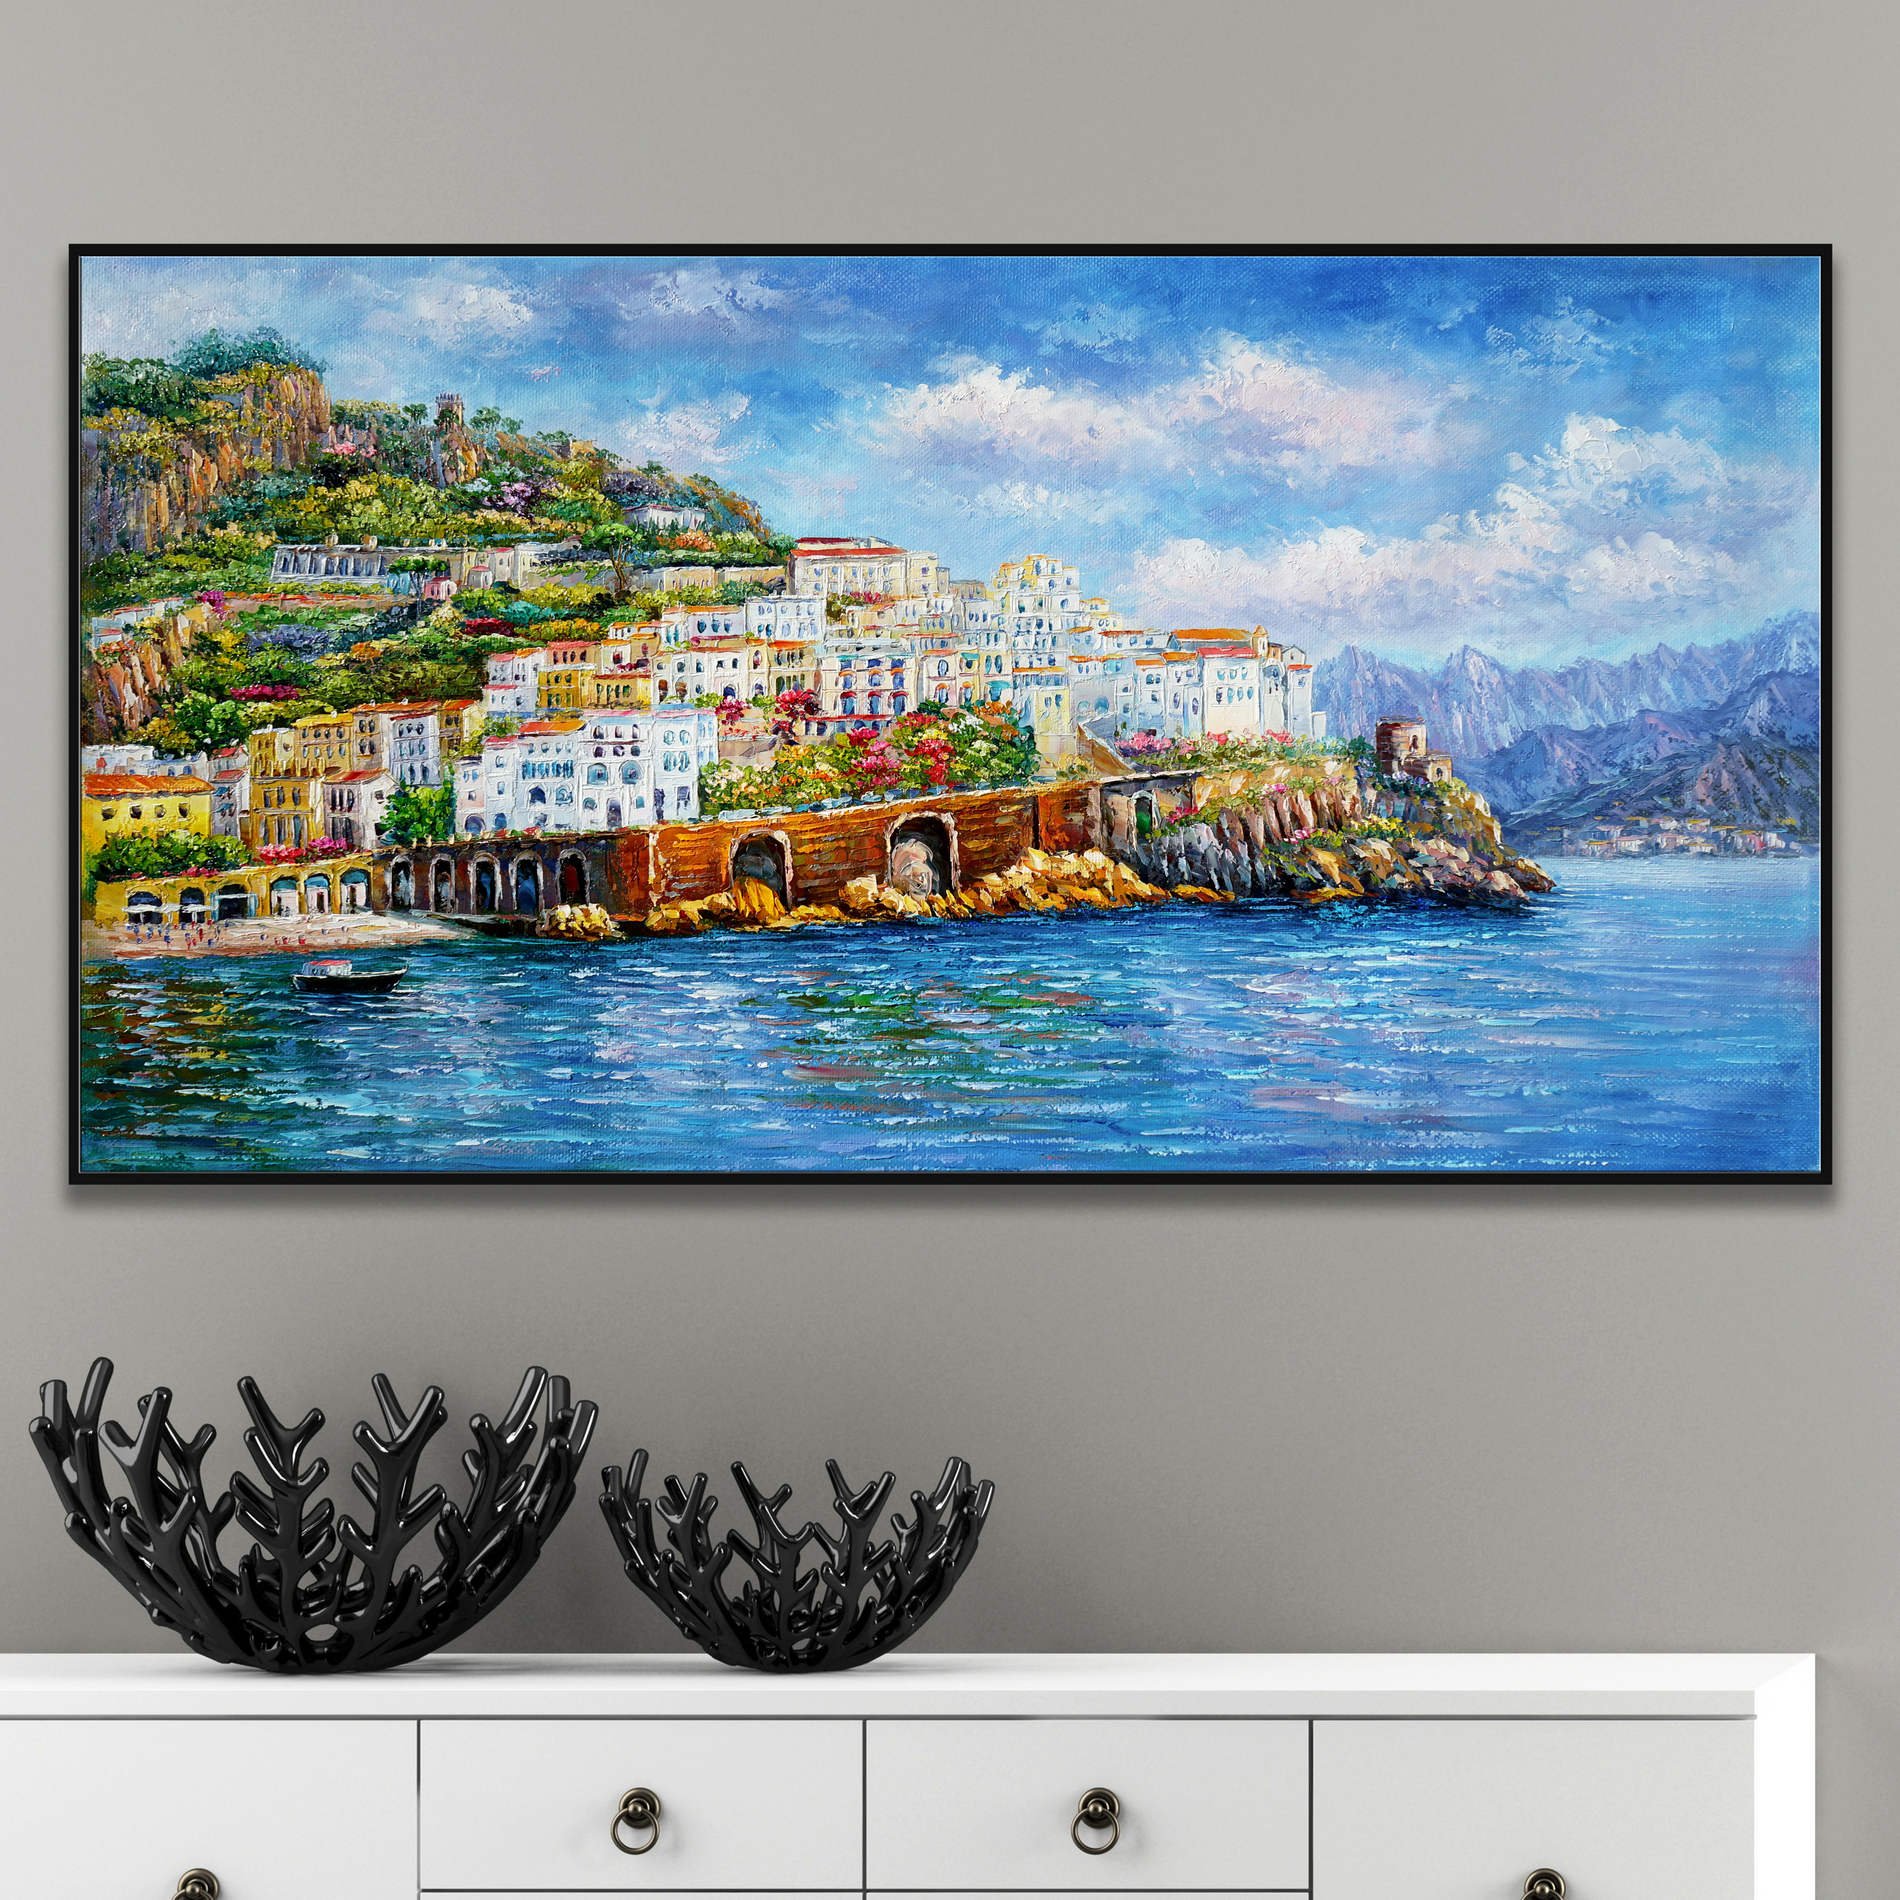 Dipinto della costiera amalfitana con gli edifici colorati di Amalfi